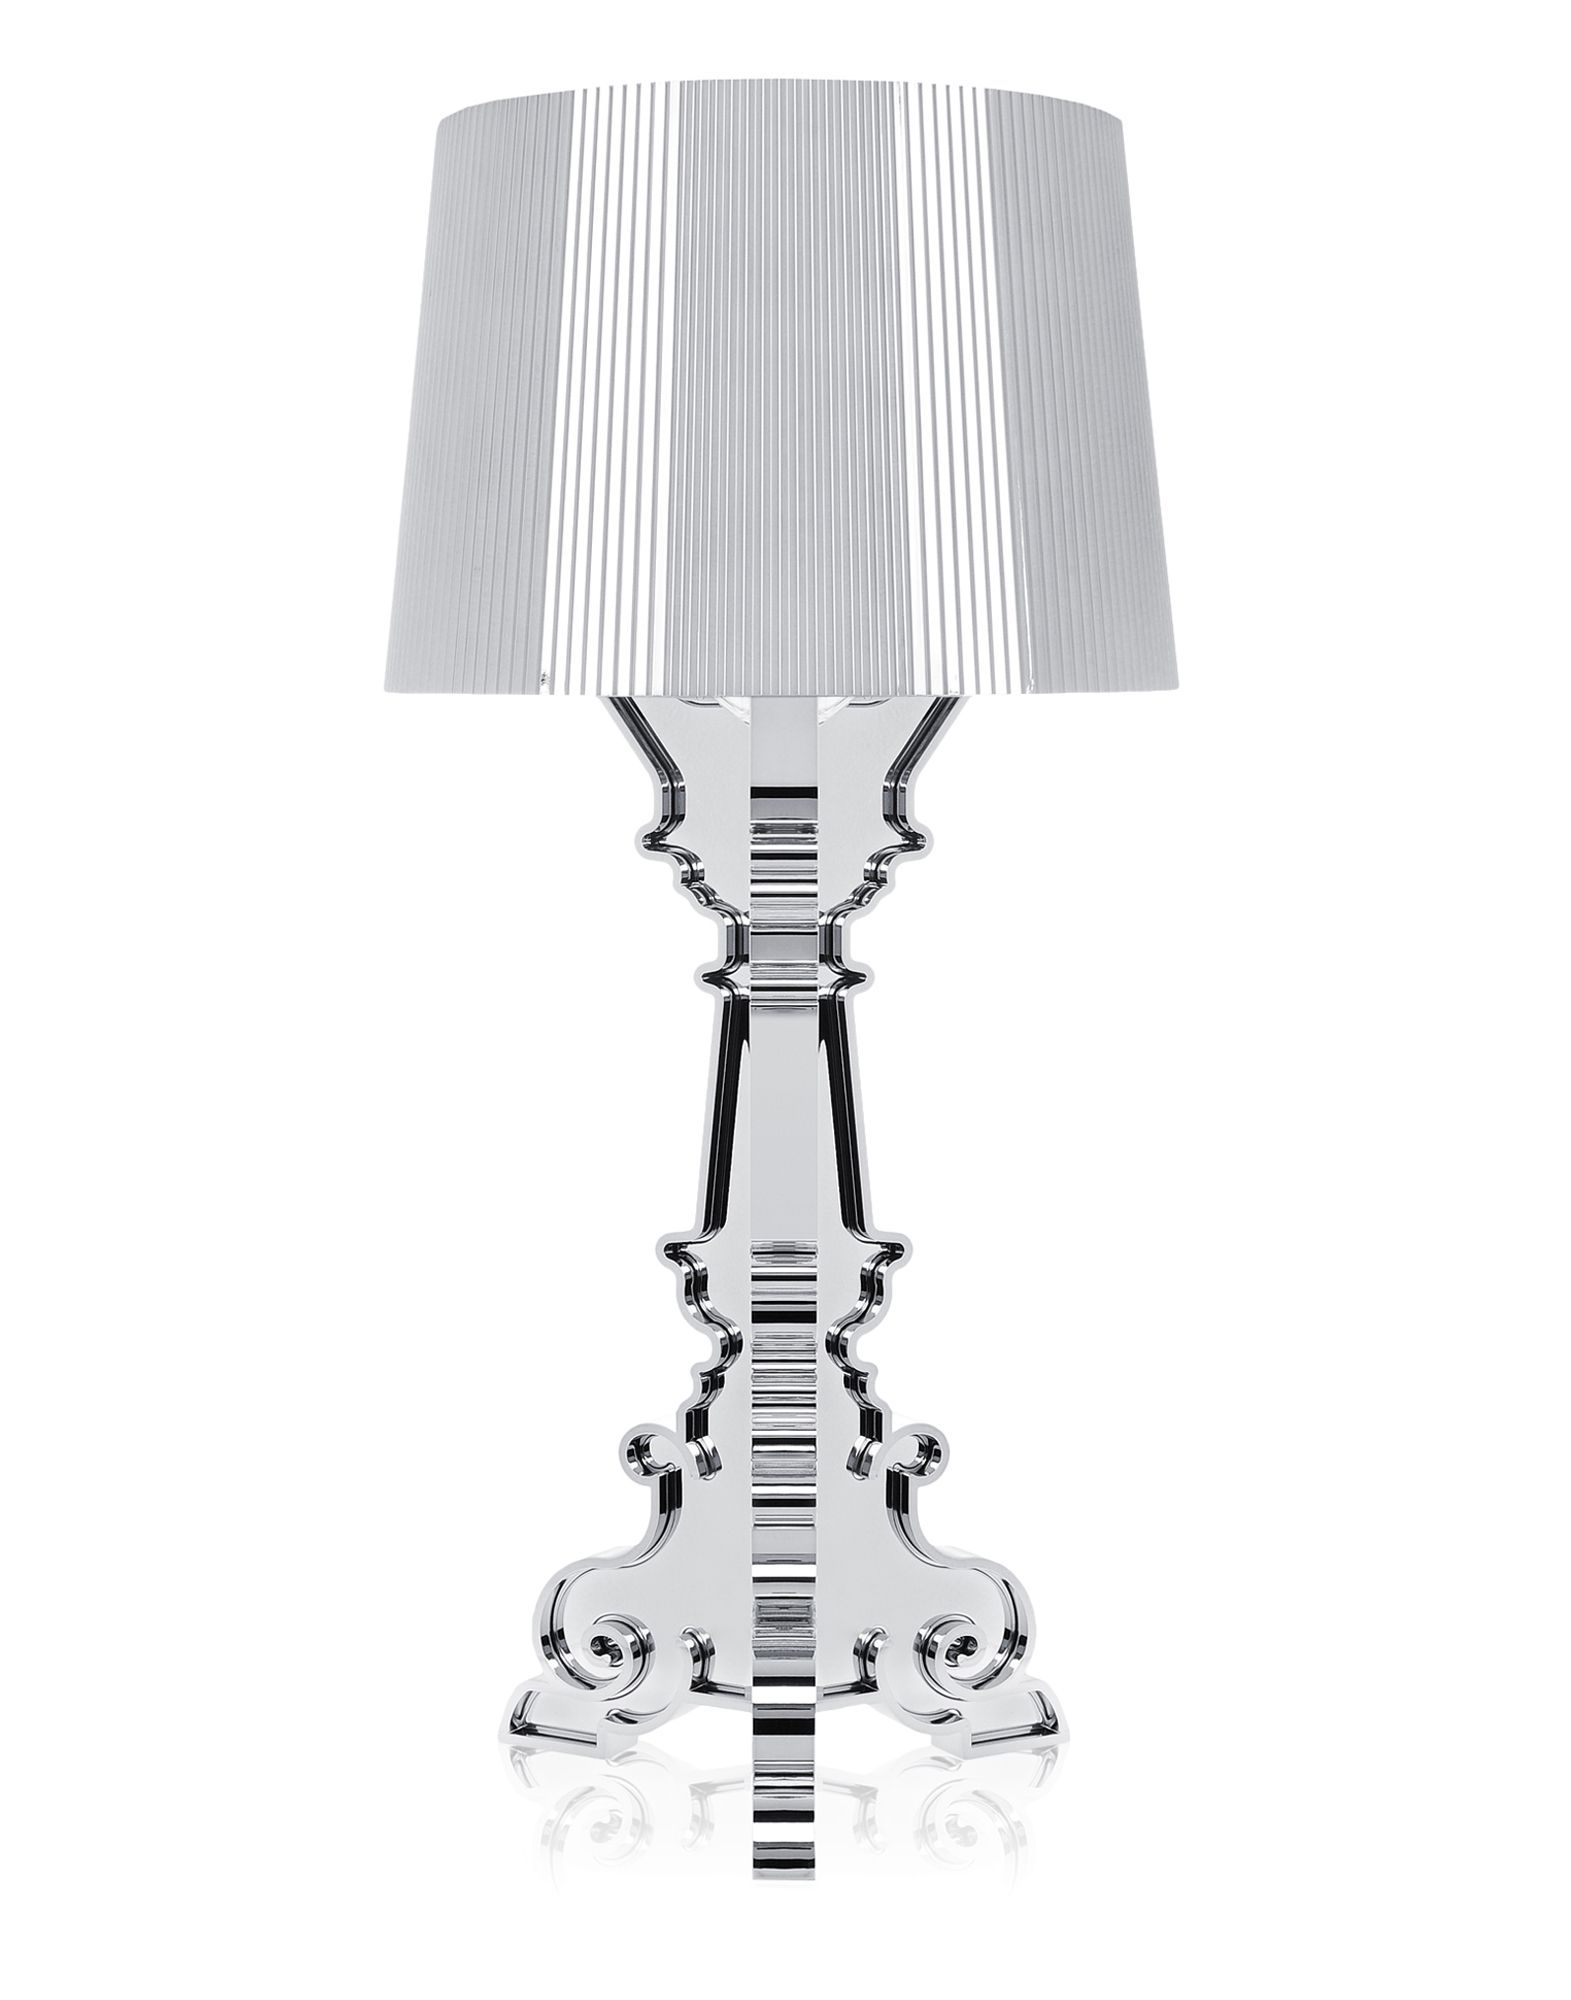 Kartell Table Lamps BOURGIE CHROMED | Kartell